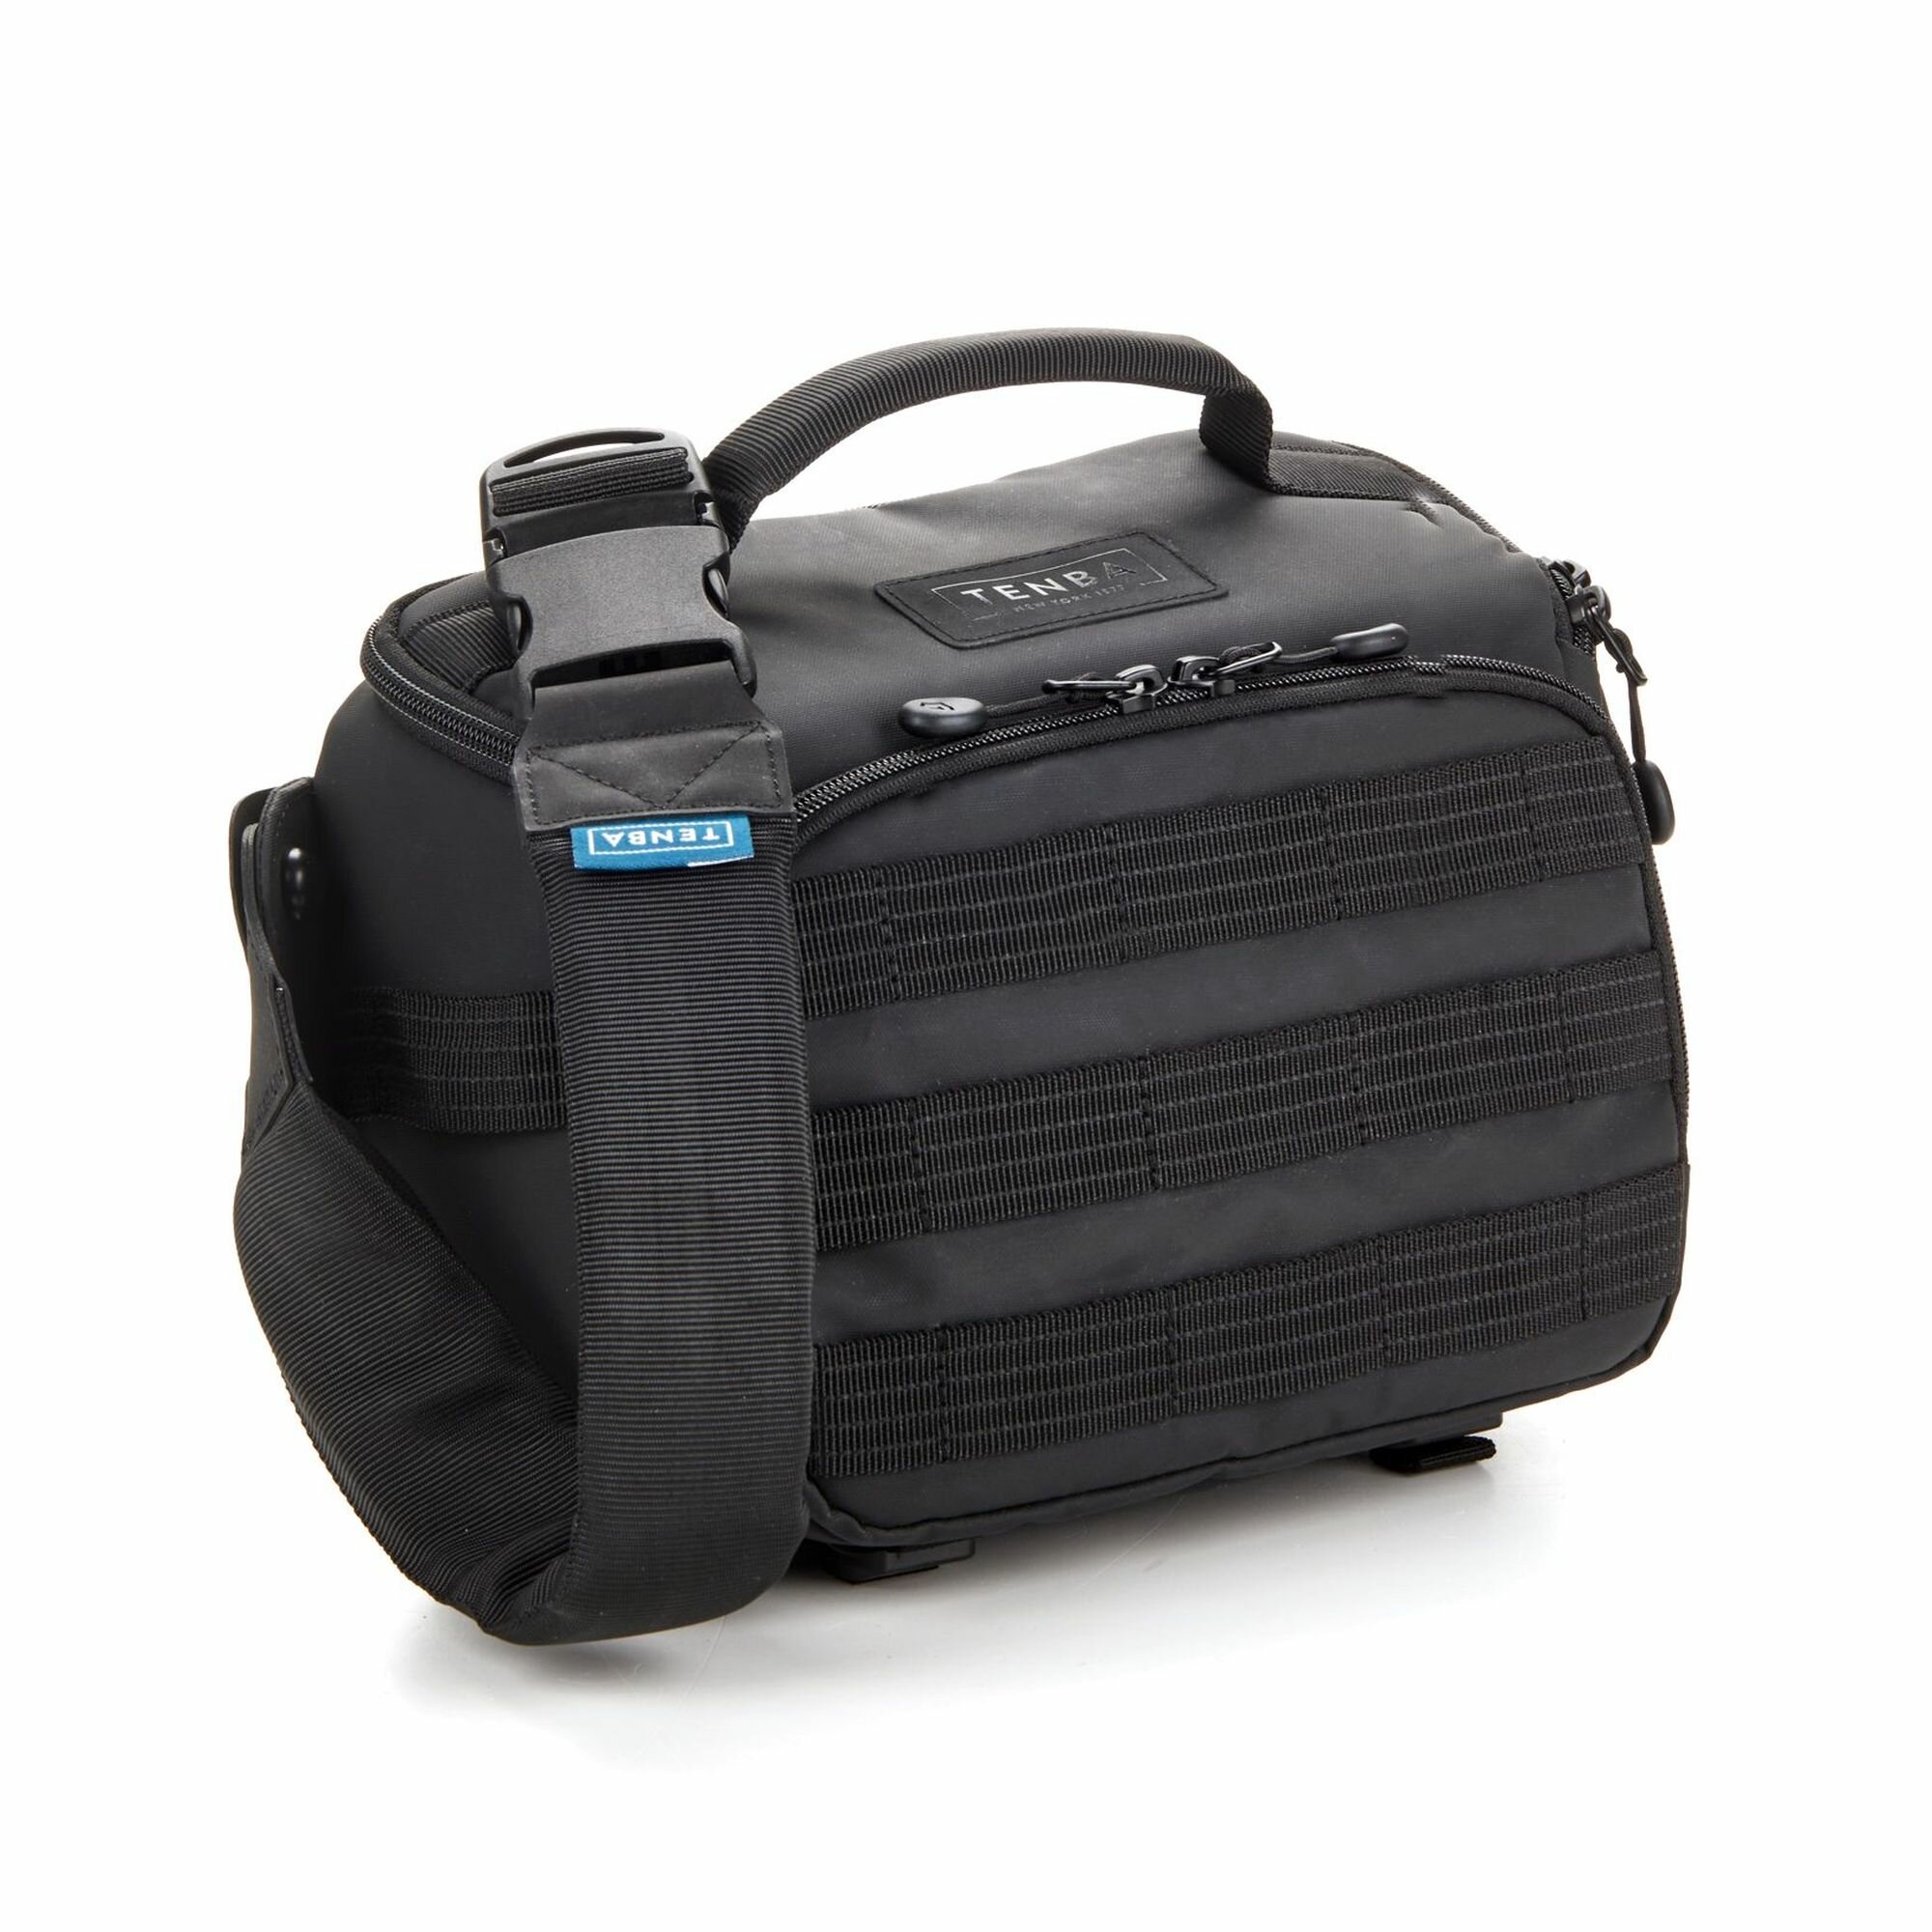 Сумка через плечо для фотоаппарата и объективов, Tenba Axis v2 Tactical 4L Sling Bag Black, черная 637-760